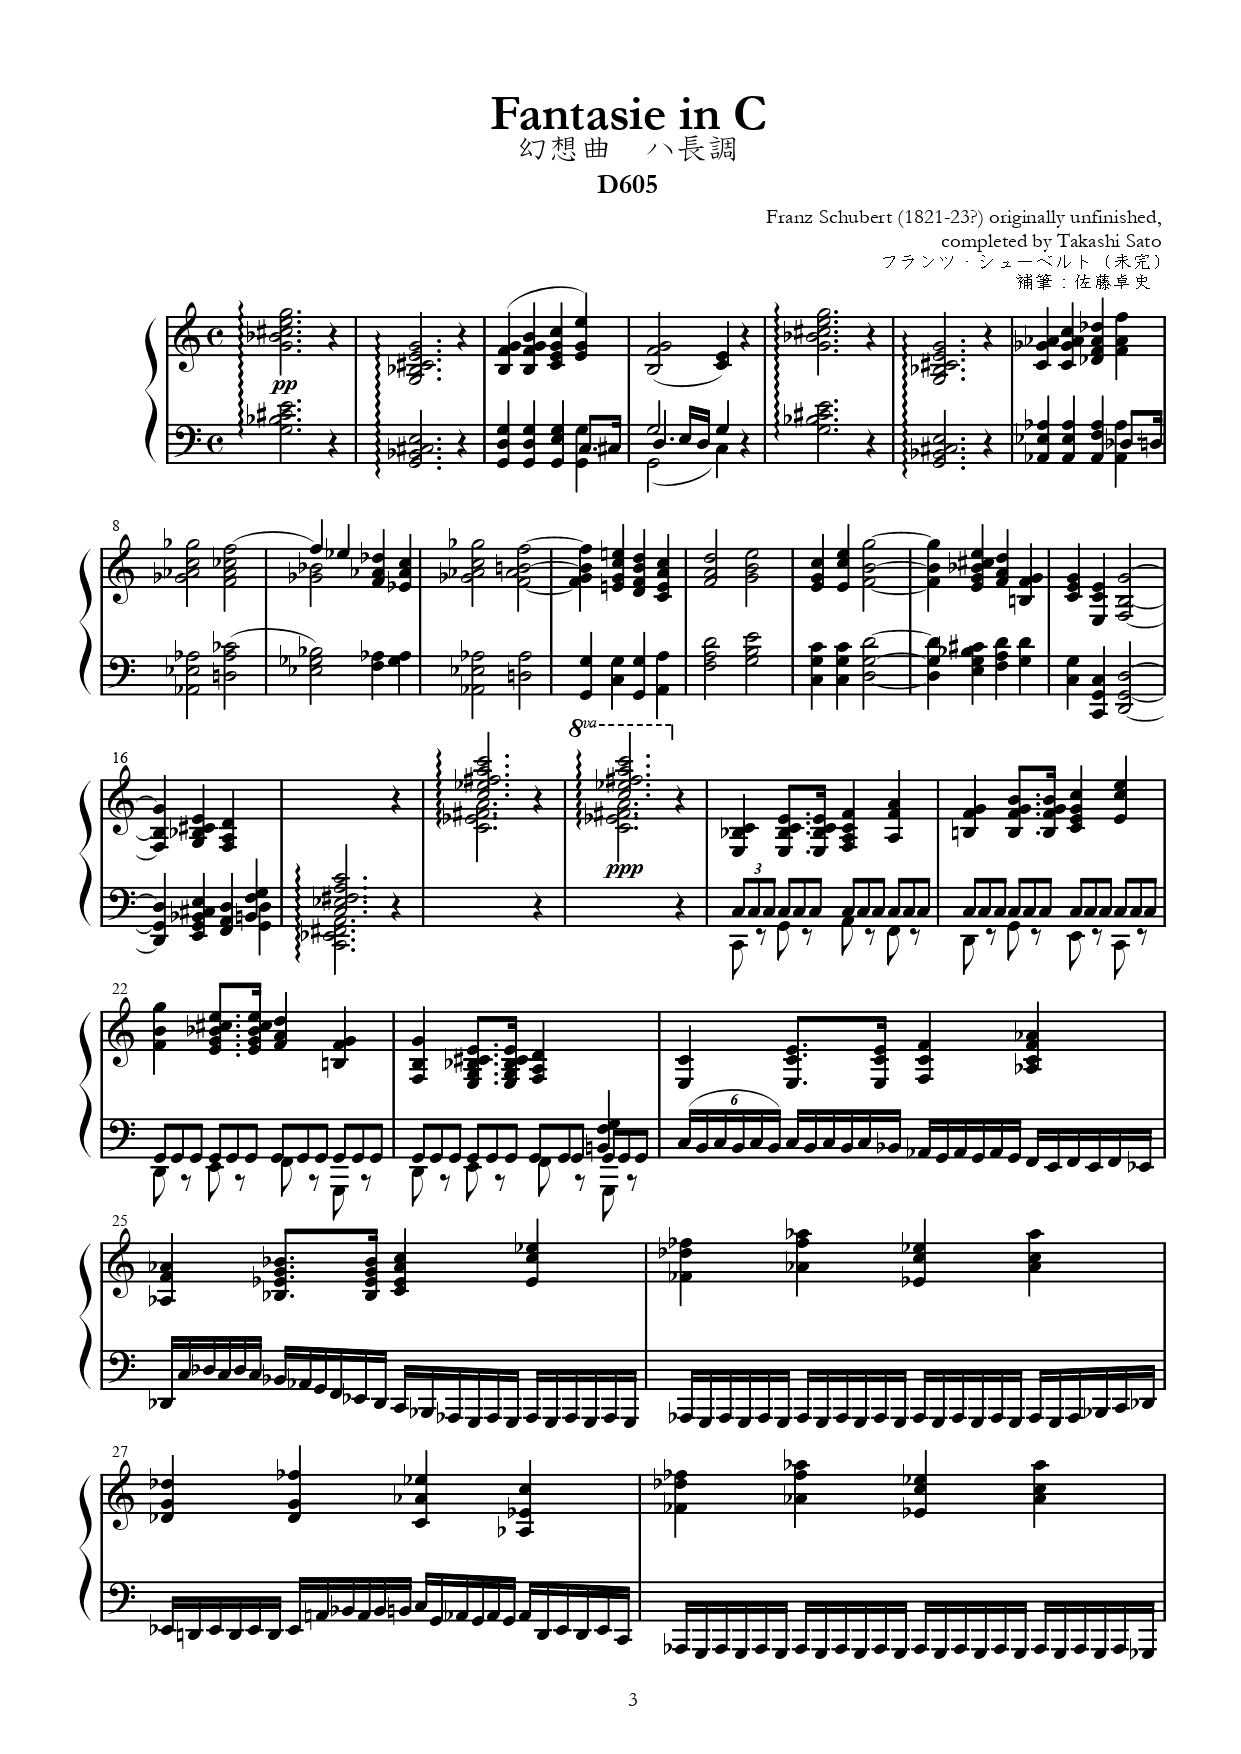 ディメルスマン : 幻想小協奏曲 作品36 (フルート、オーボエ、ピアノ) ビヨドー出版